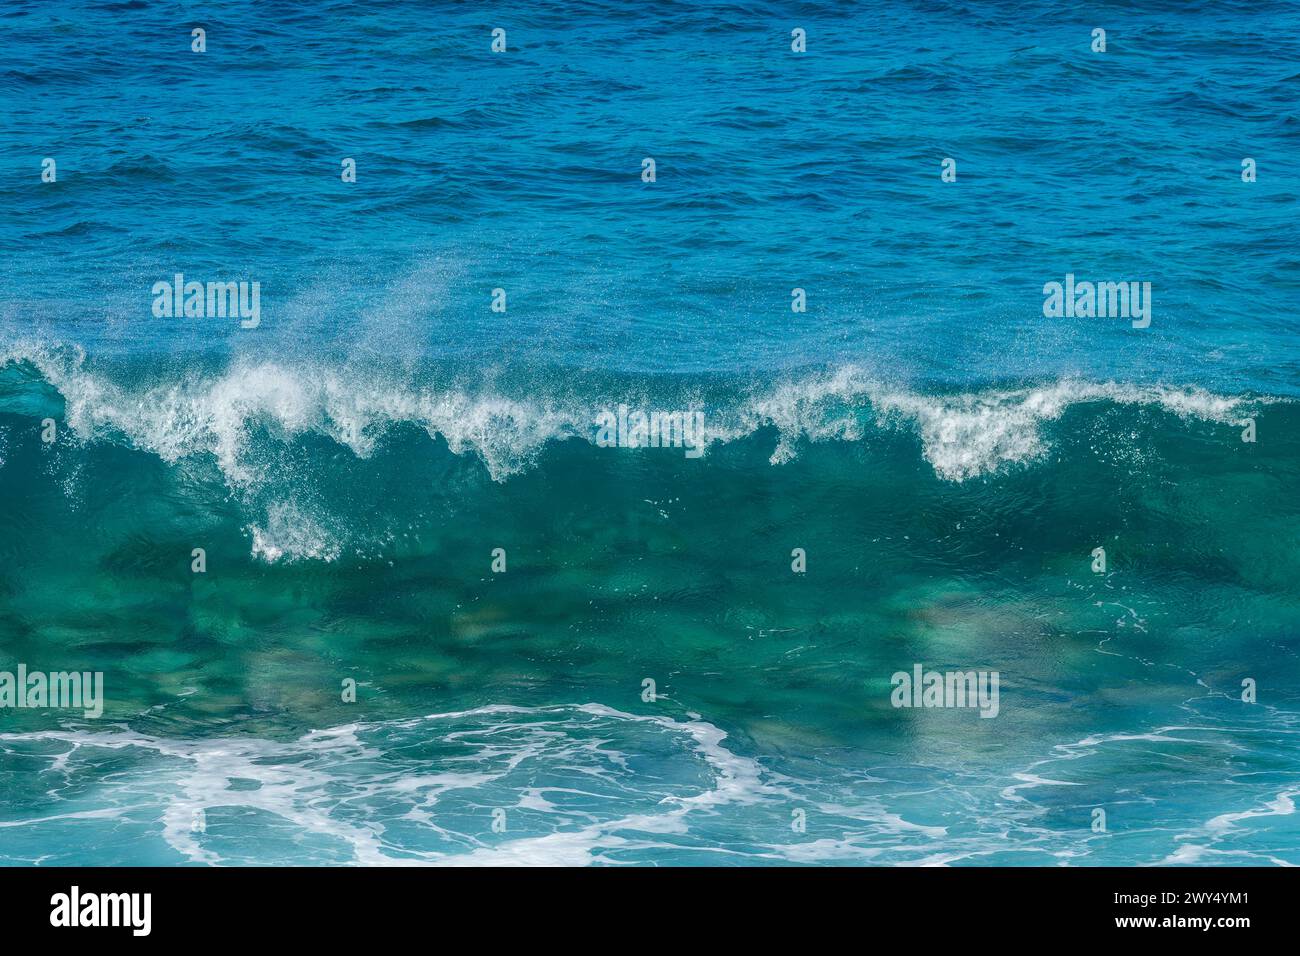 Vue de face d'une vague qui s'écrase. Éclaboussure d'eau transparente bleue, fond d'océan. Banque D'Images